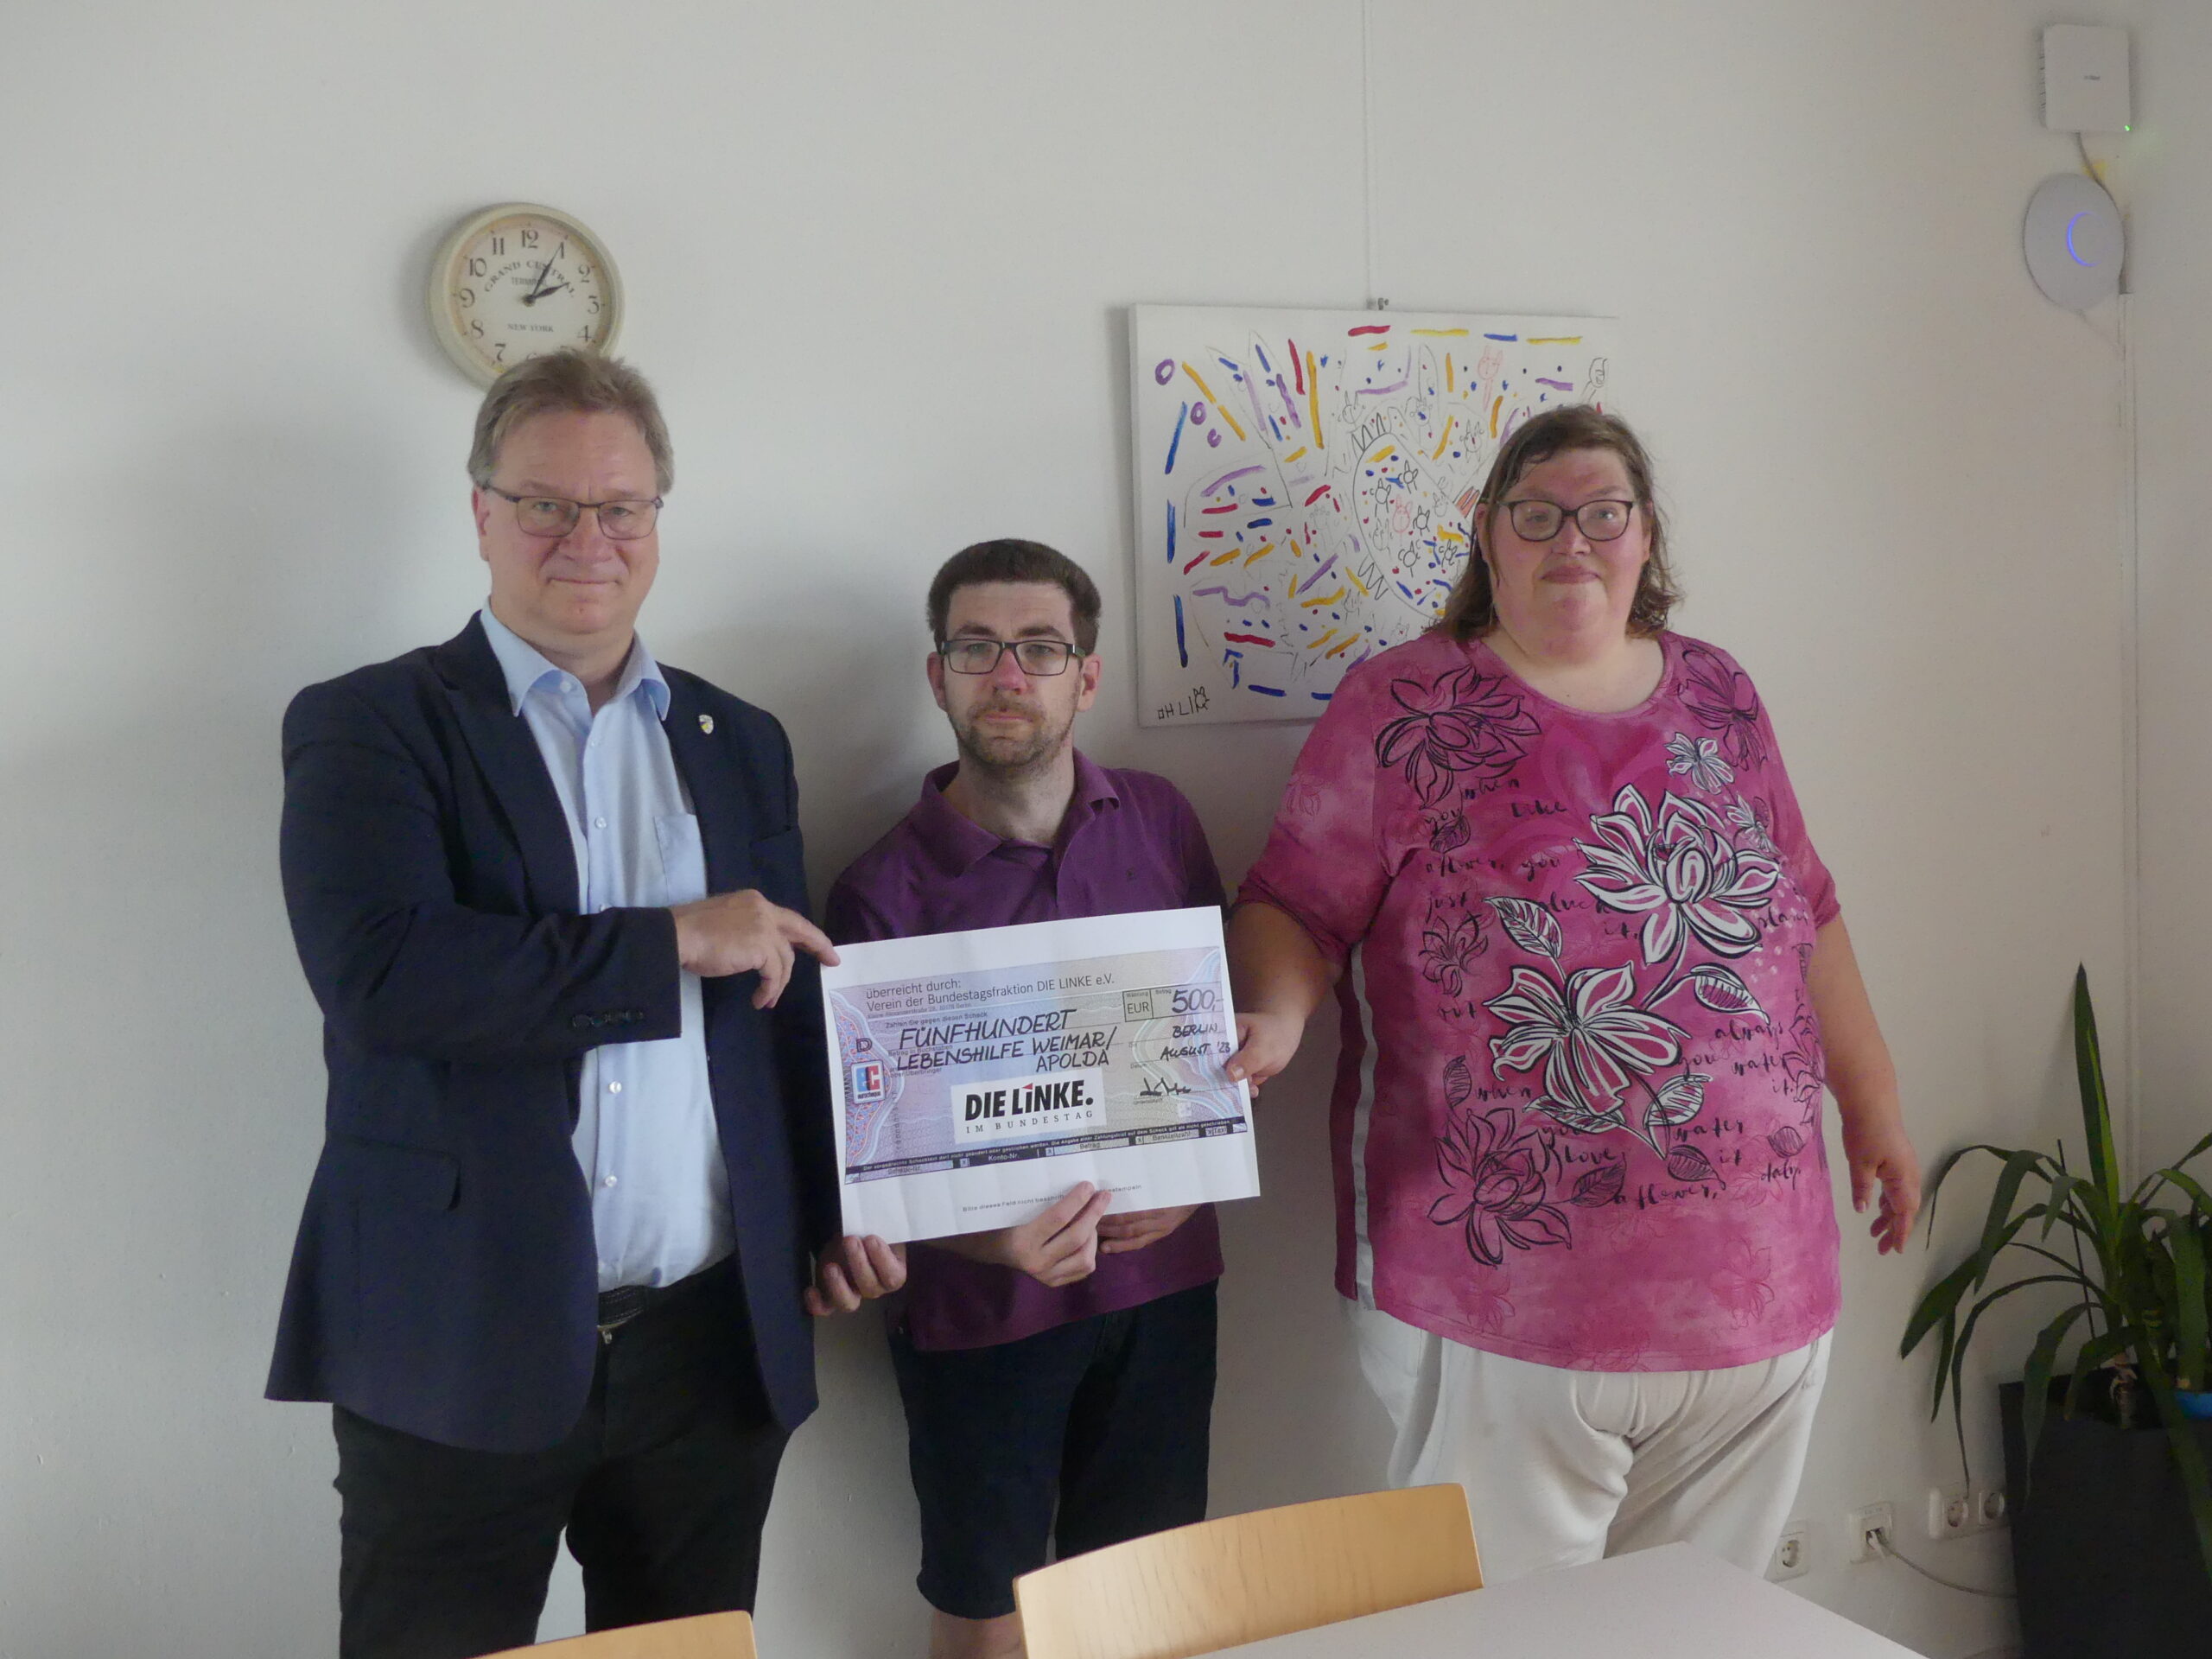 Herr Lenk, Herr Petsch und Frau Winter halten den übergroßen Spendenscheck über 500 Euro von der Bundestagsfraktion Die Linke